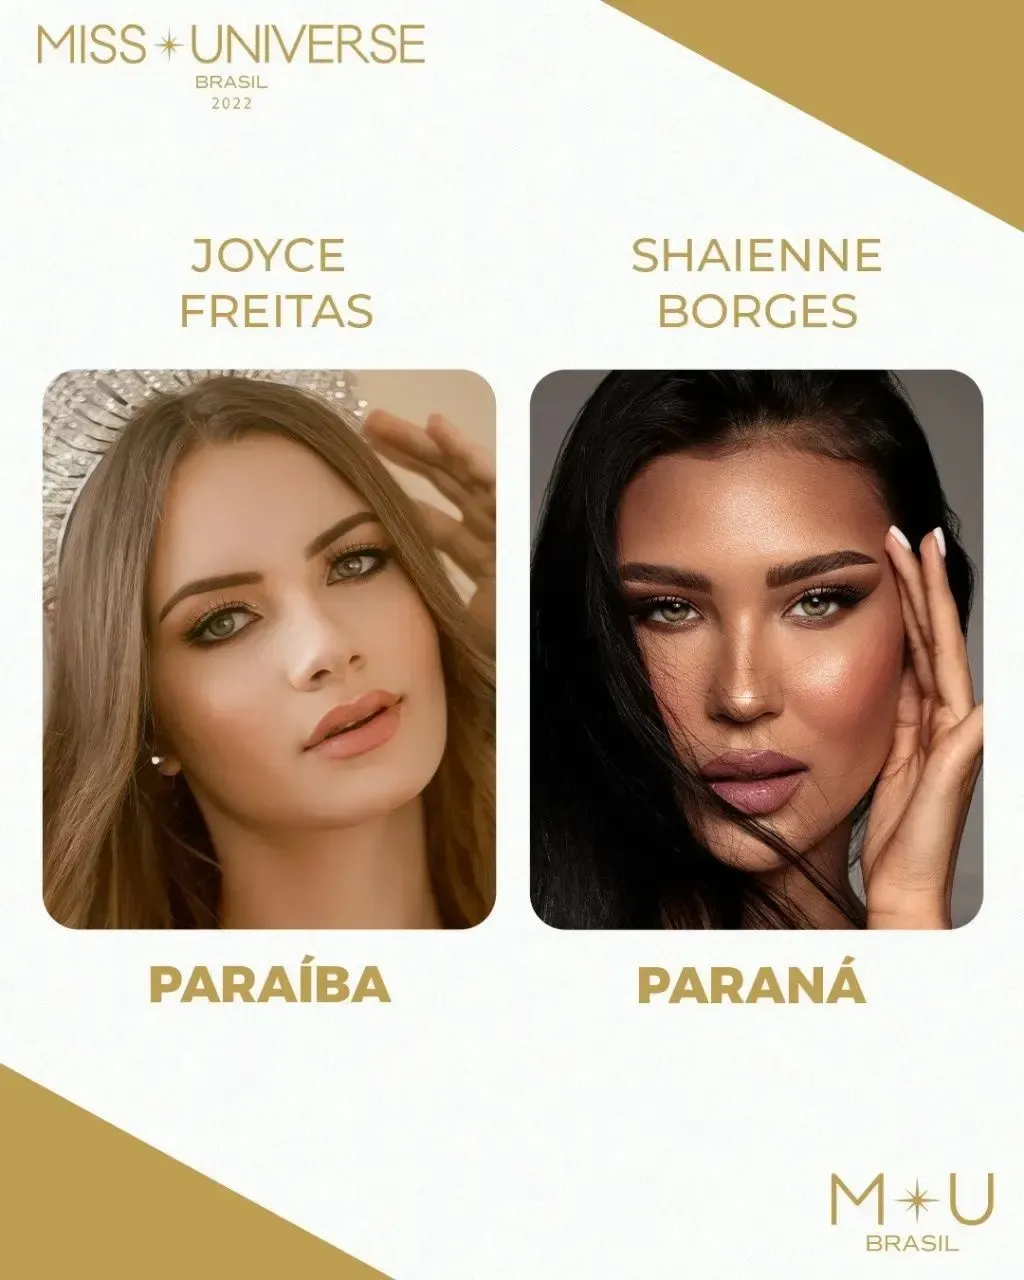 candidatas a miss brasil 2022. top 16: pags 6, 7. top 10: pag 7. - Página 6 Jda1a4